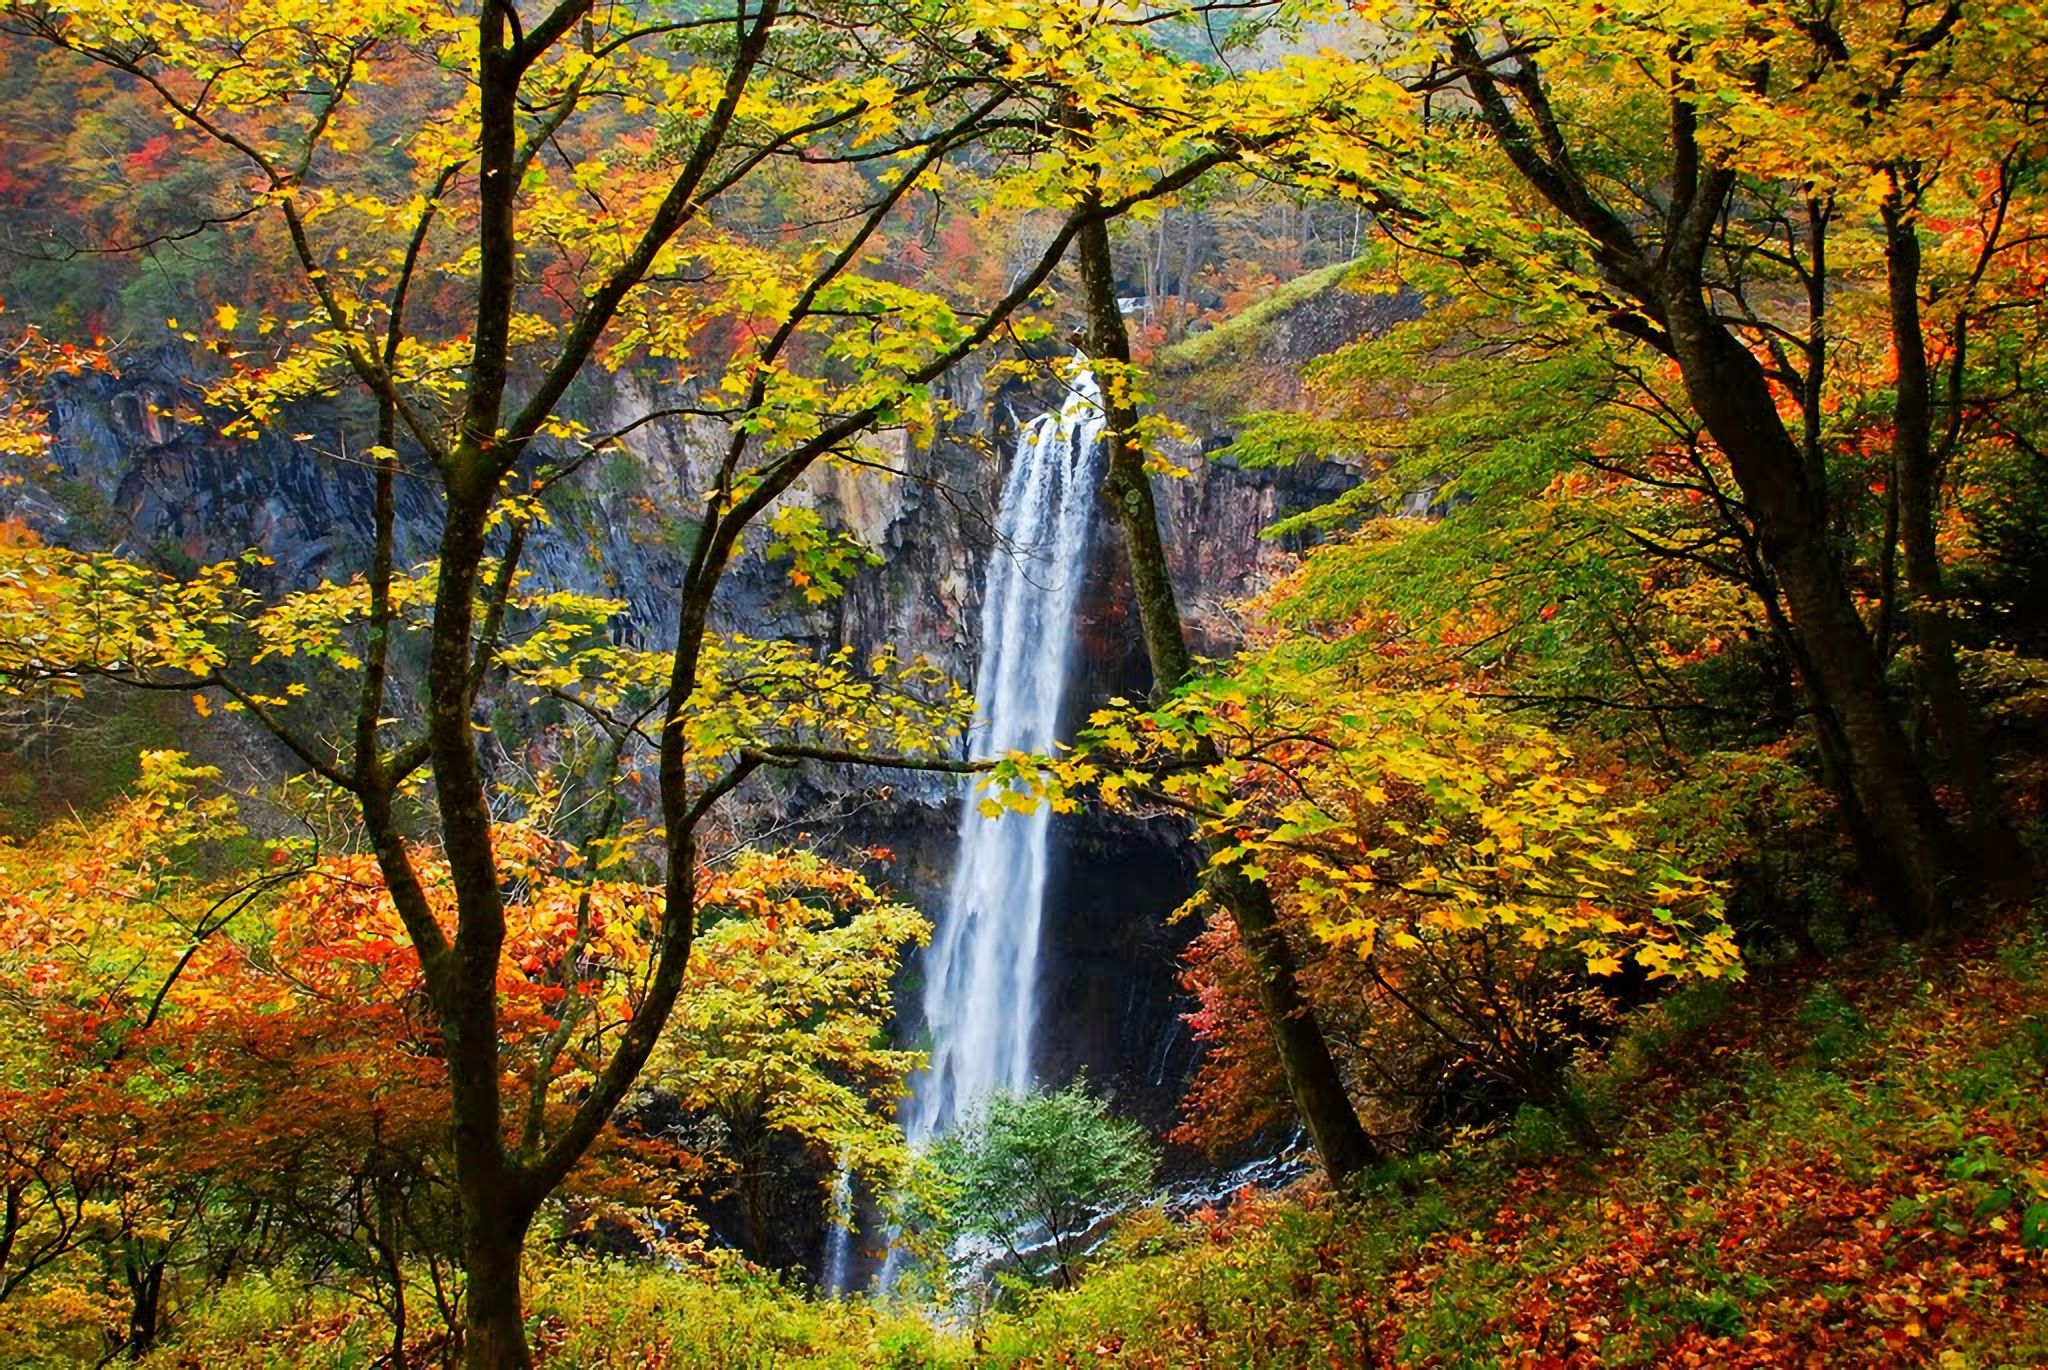 Скачать обои бесплатно Осень, Водопады, Водопад, Лес, Дерево, Земля/природа картинка на рабочий стол ПК